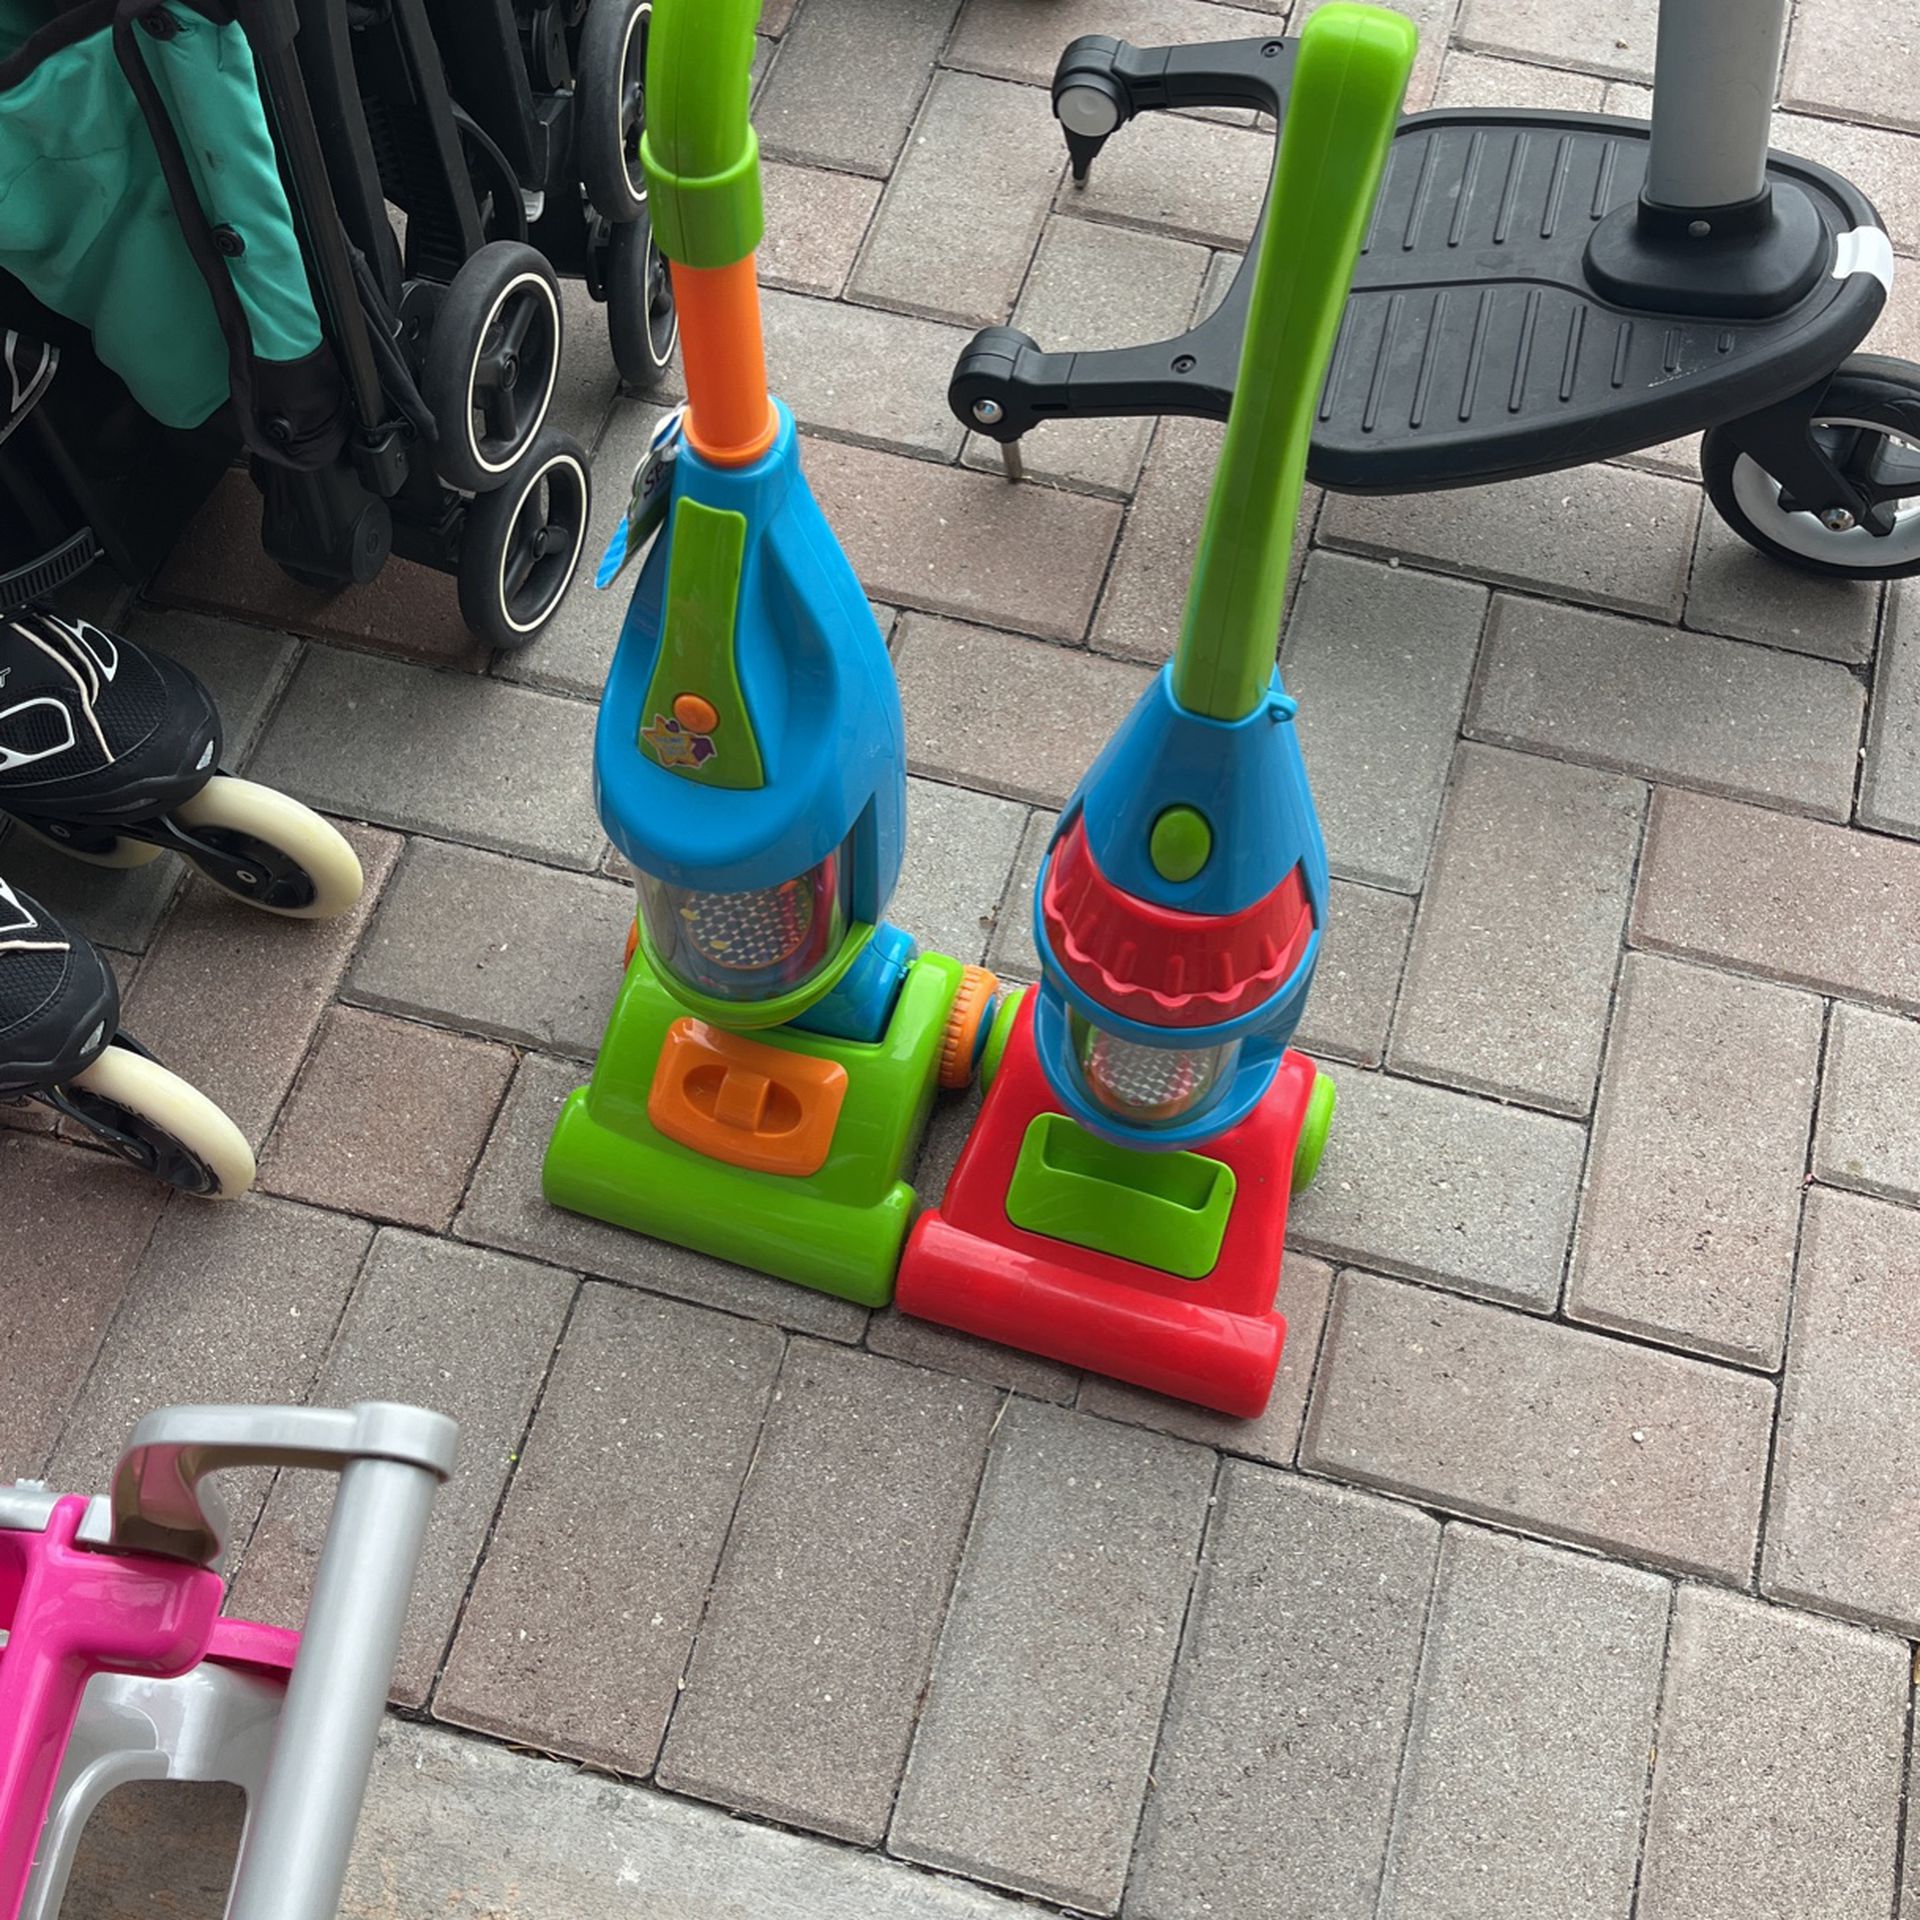 Toy vacuum 